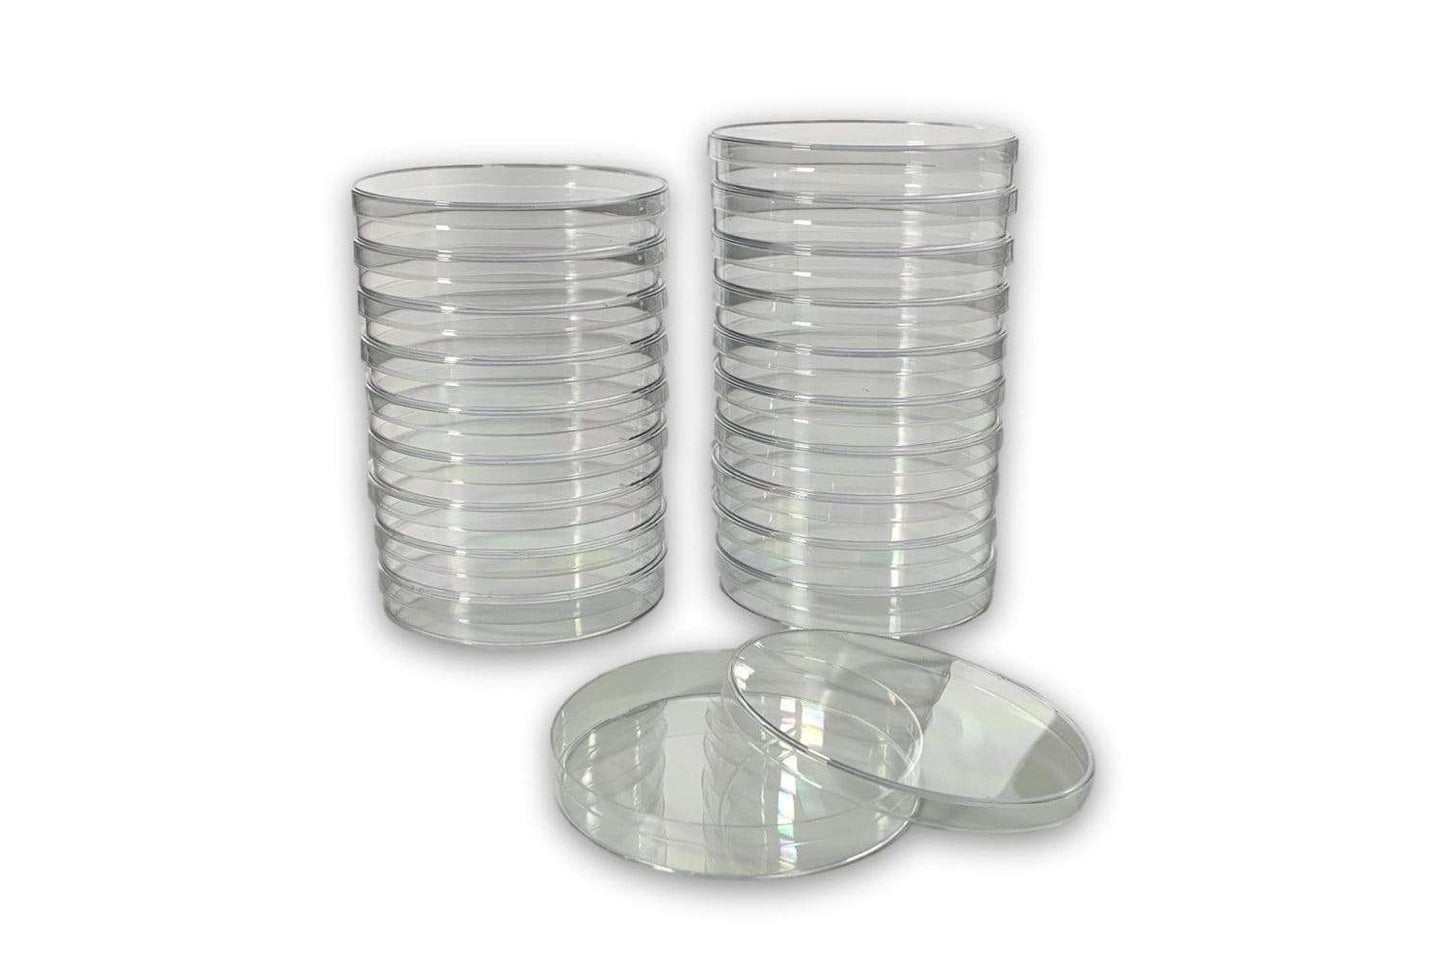 Arbor Scientific Plastic Petri Dish, 90mm x 15mm, Pack of 20